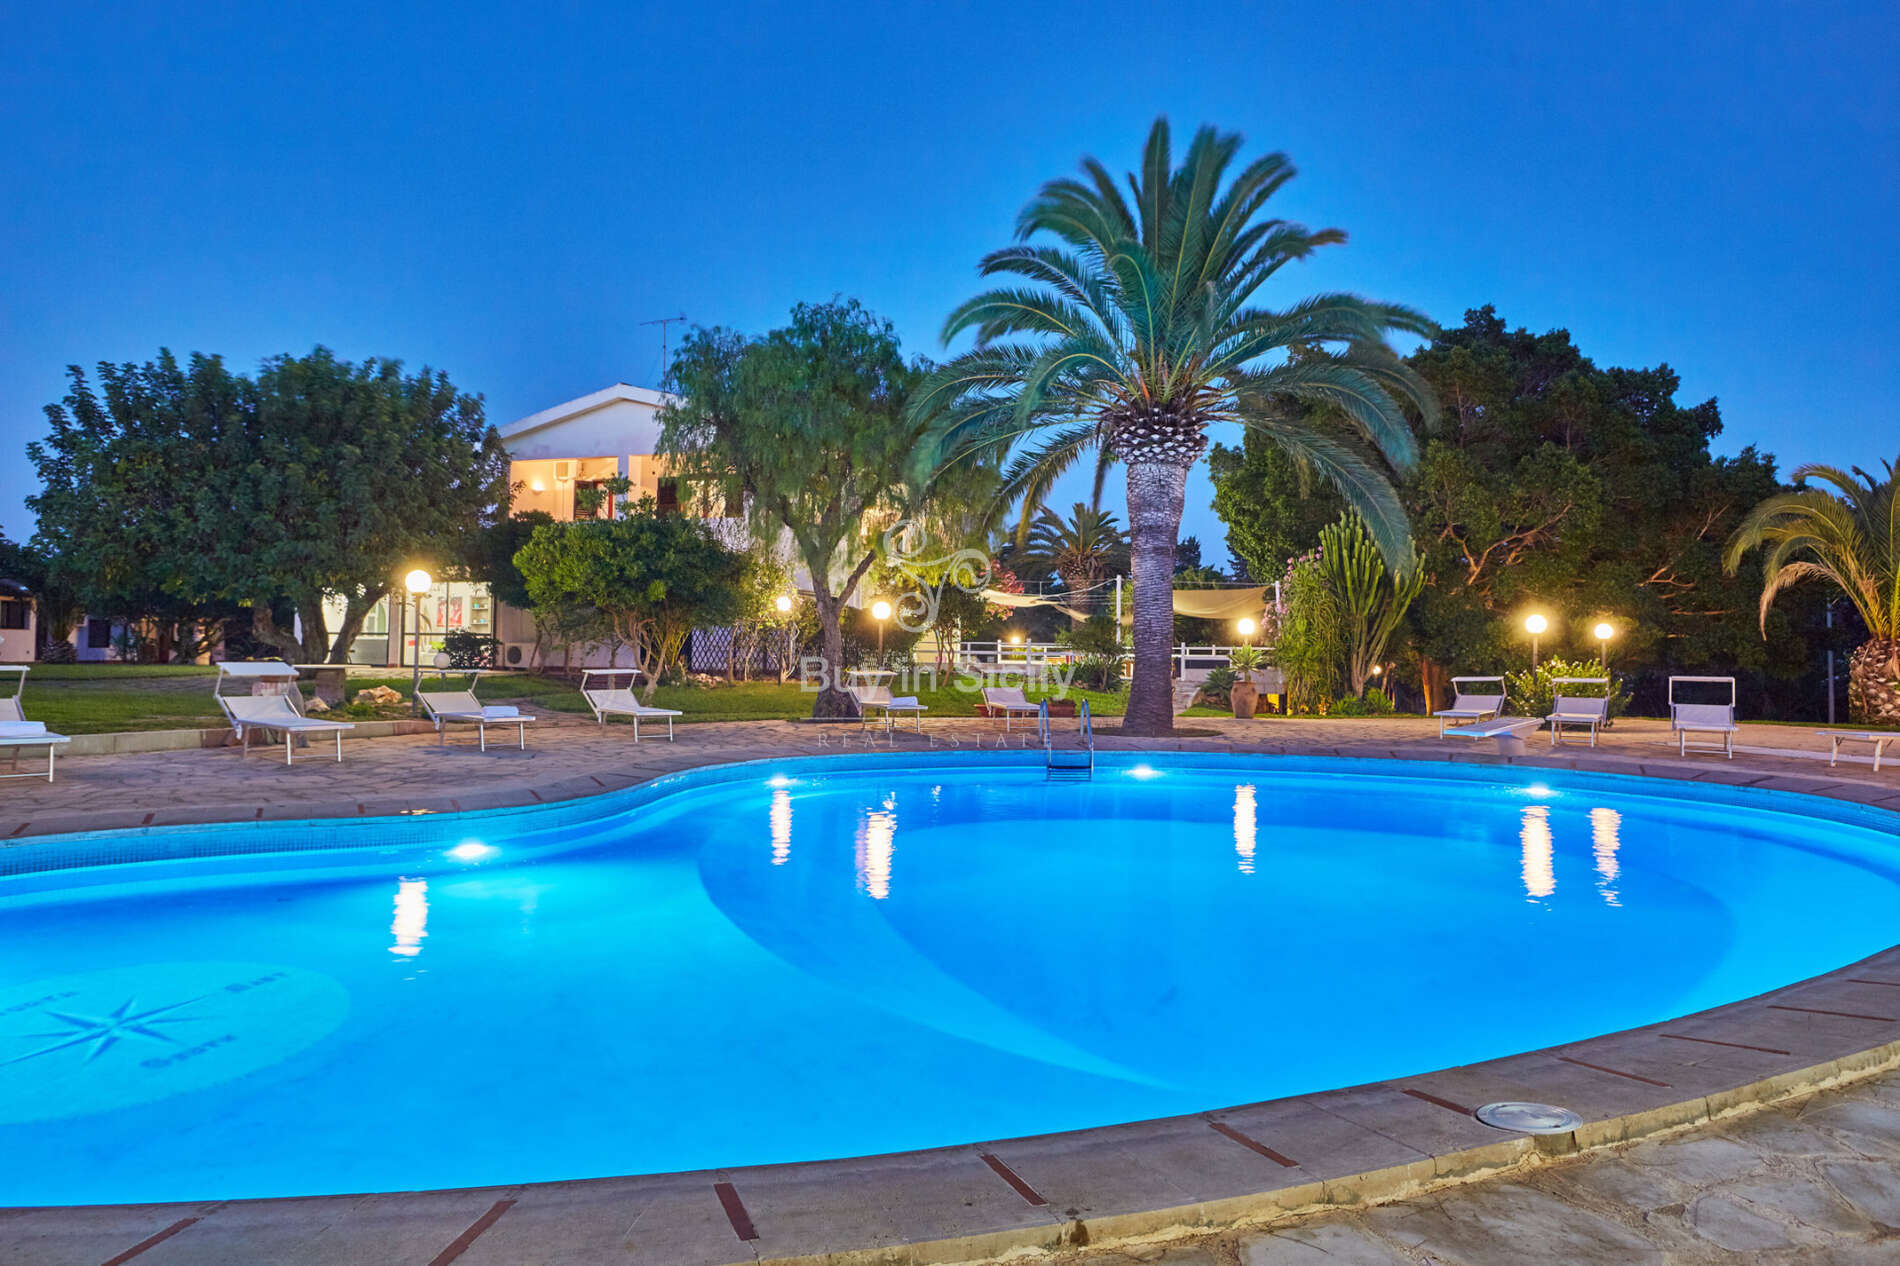 Spettacolare villa con piscina, immersa in un meraviglioso parco, a soli 300 metri dalla spiaggia